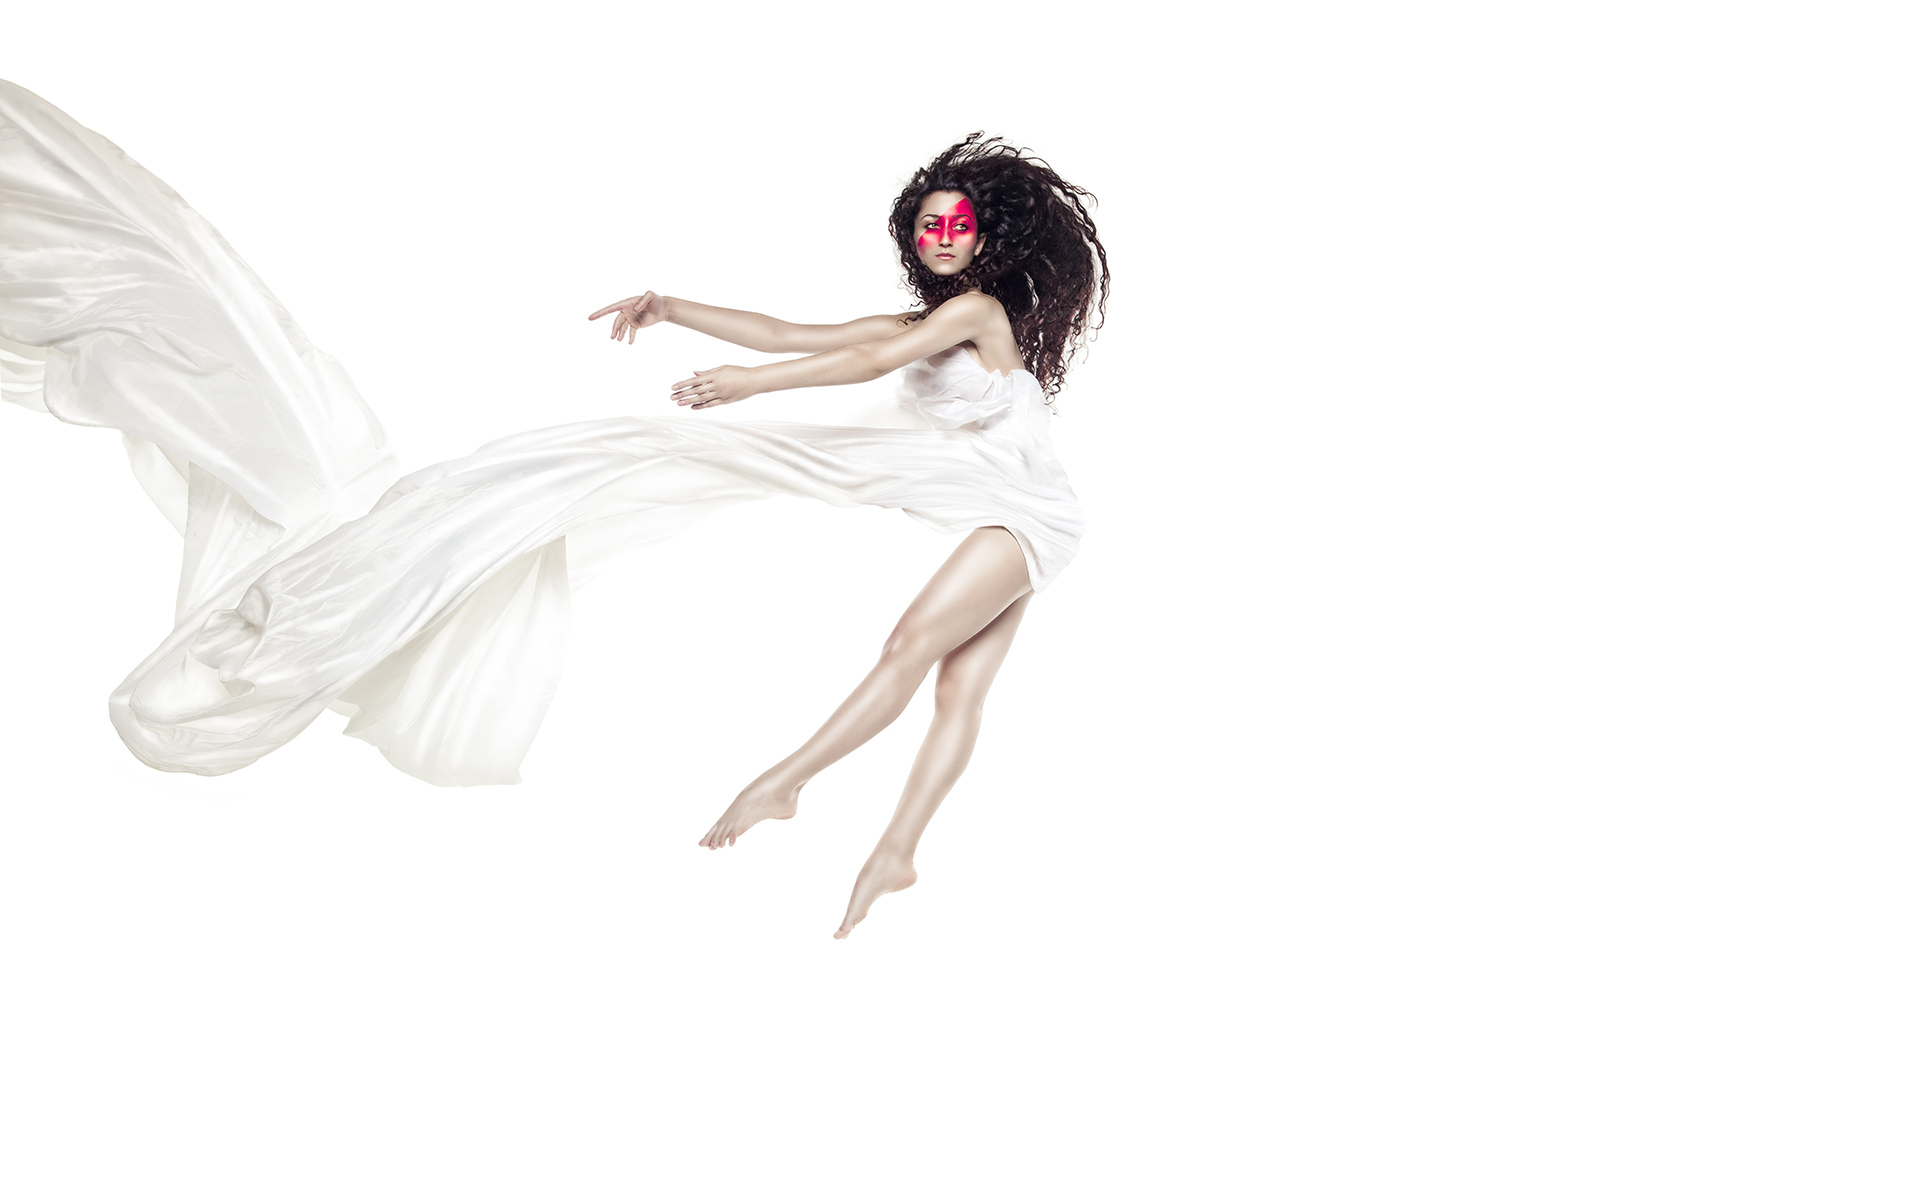 Kitfox Valentín : Dancer in White Flying Backwards